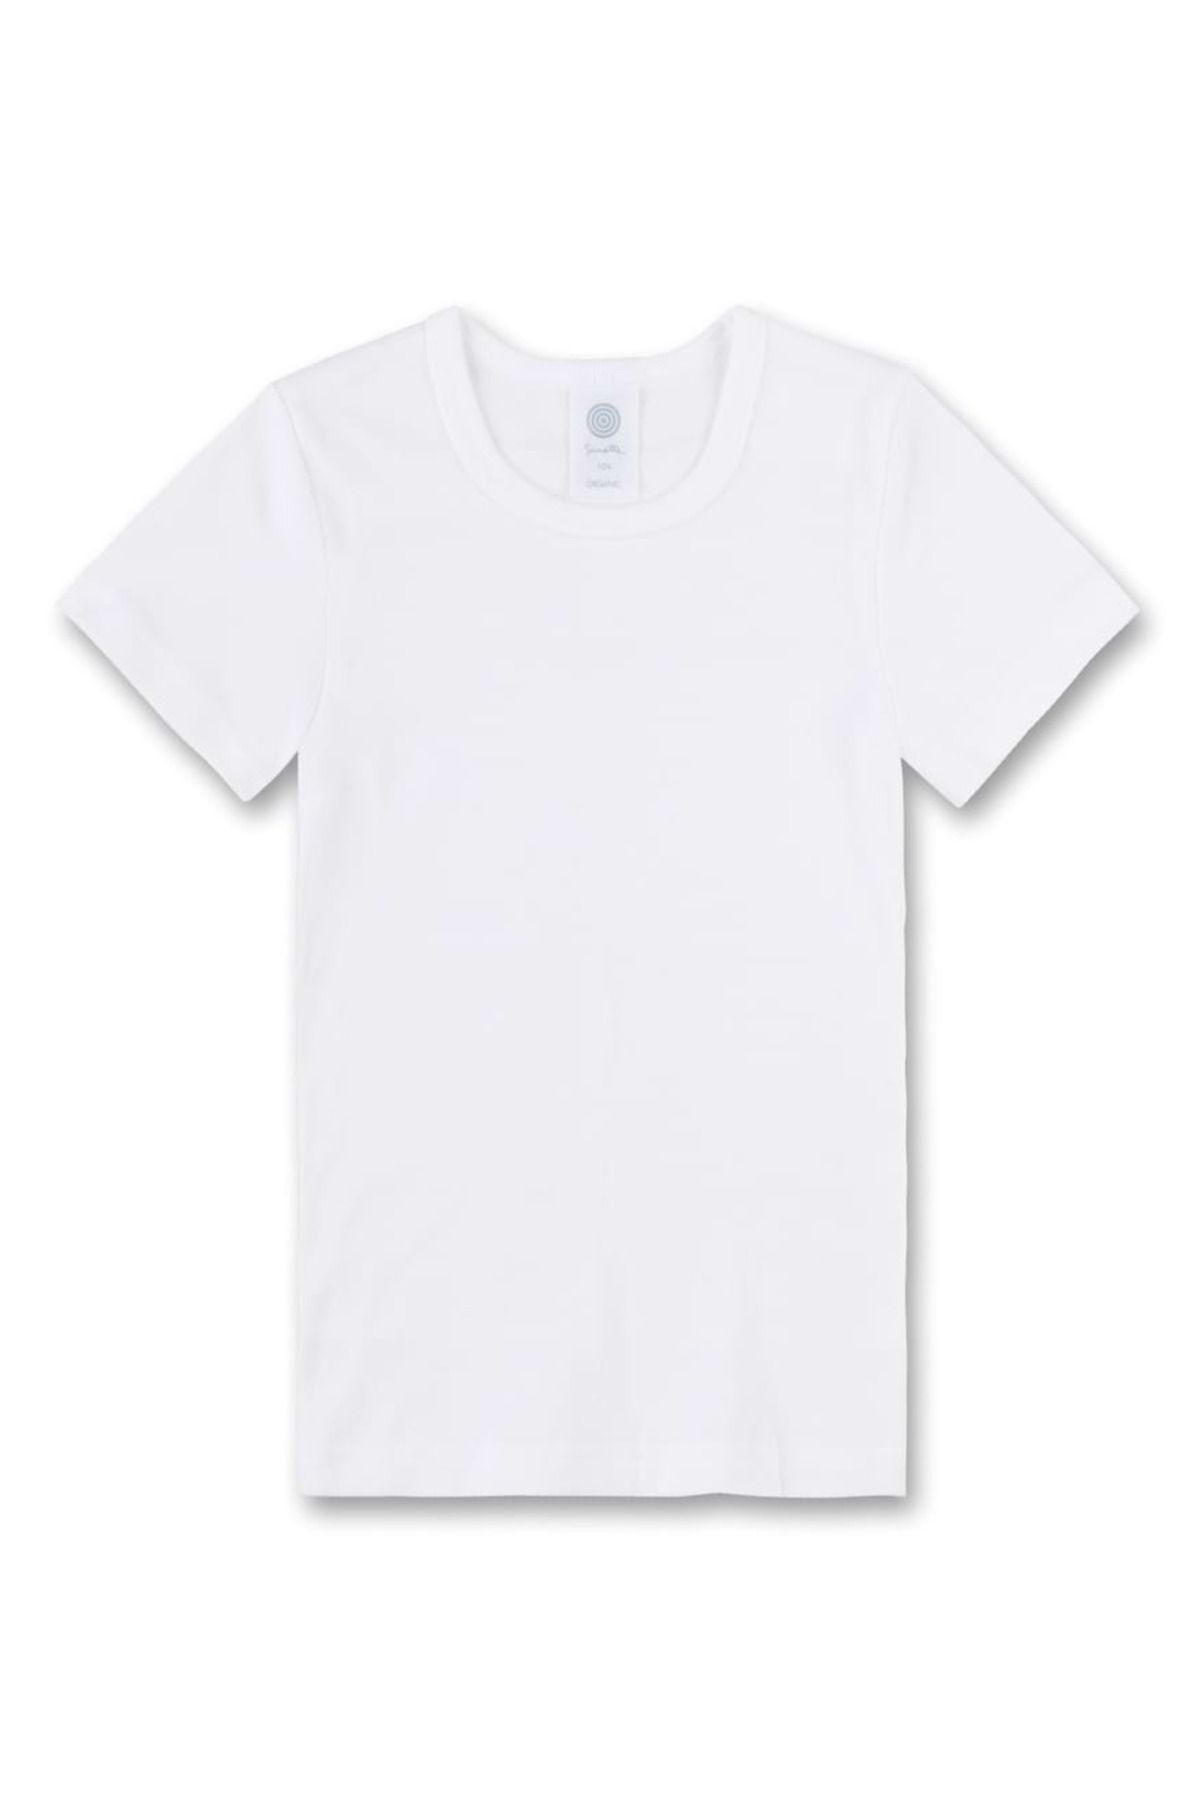 Sanetta Kinder Unterhemd - Kurzarm, Trendyol T-Shirt, Baumwolle, unisex, einfarbig 